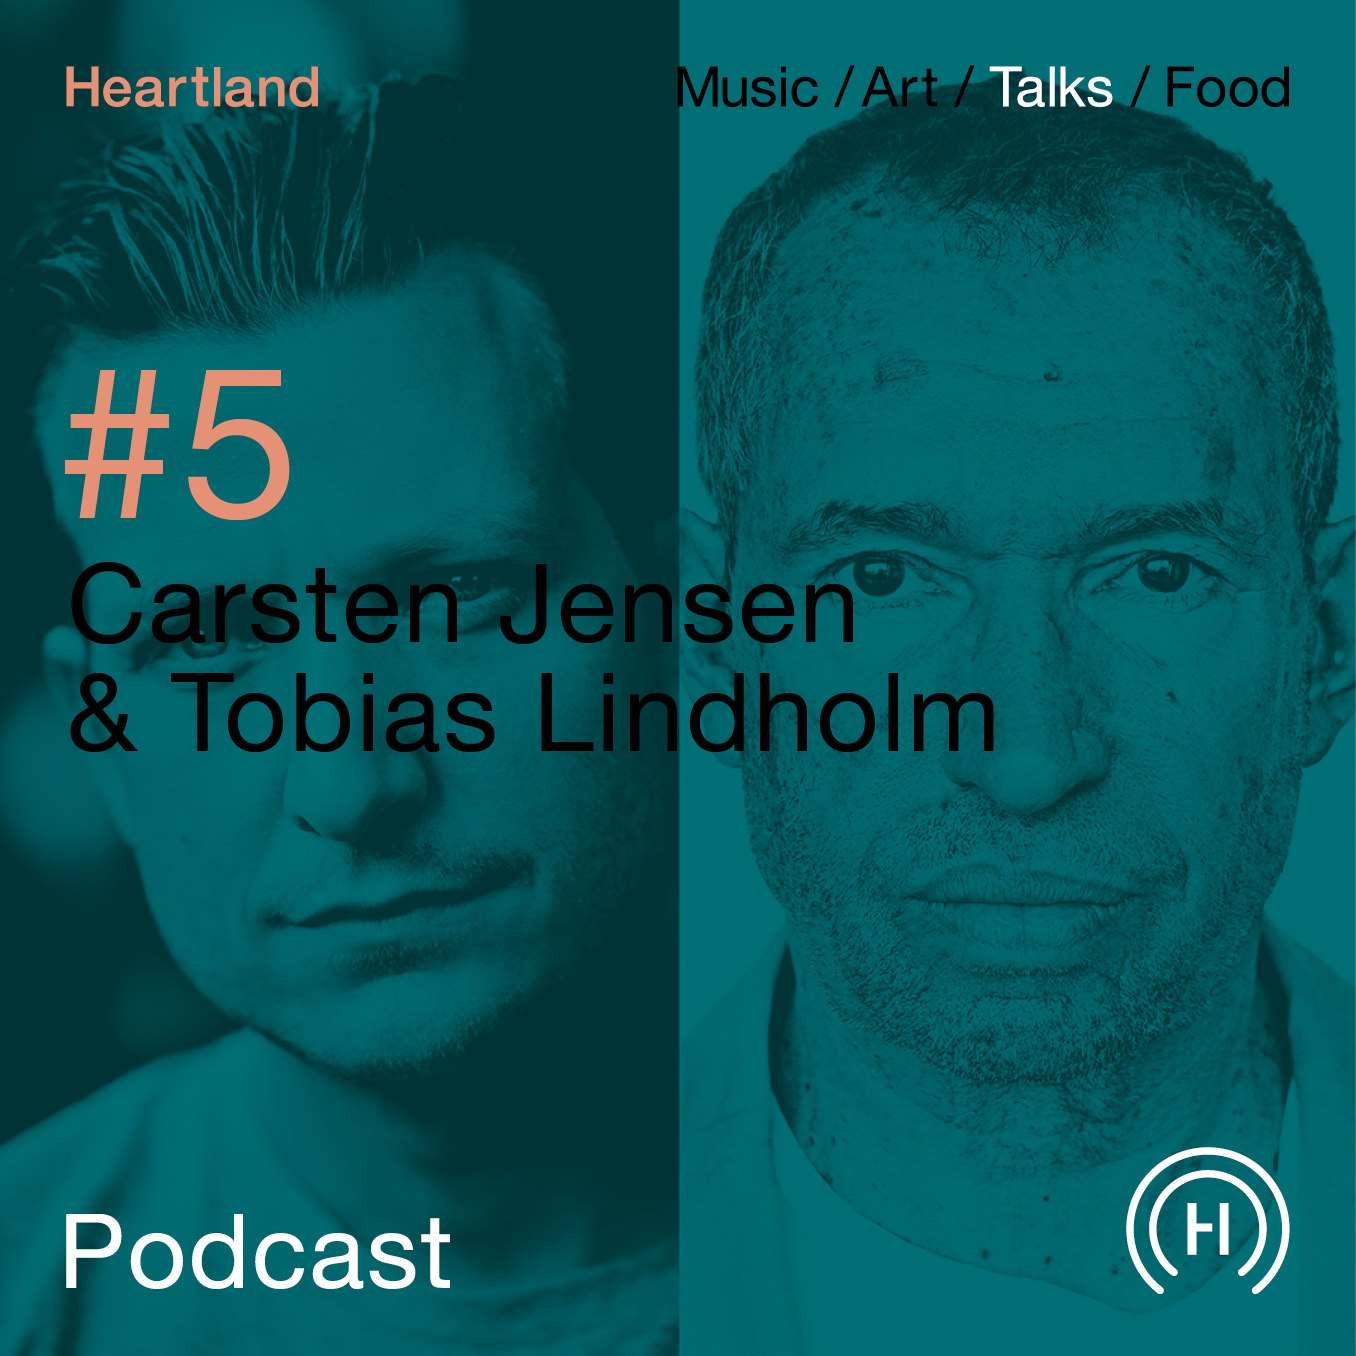 Heartland Festival podcast med Carsten Jensen og Tobias Lindholm